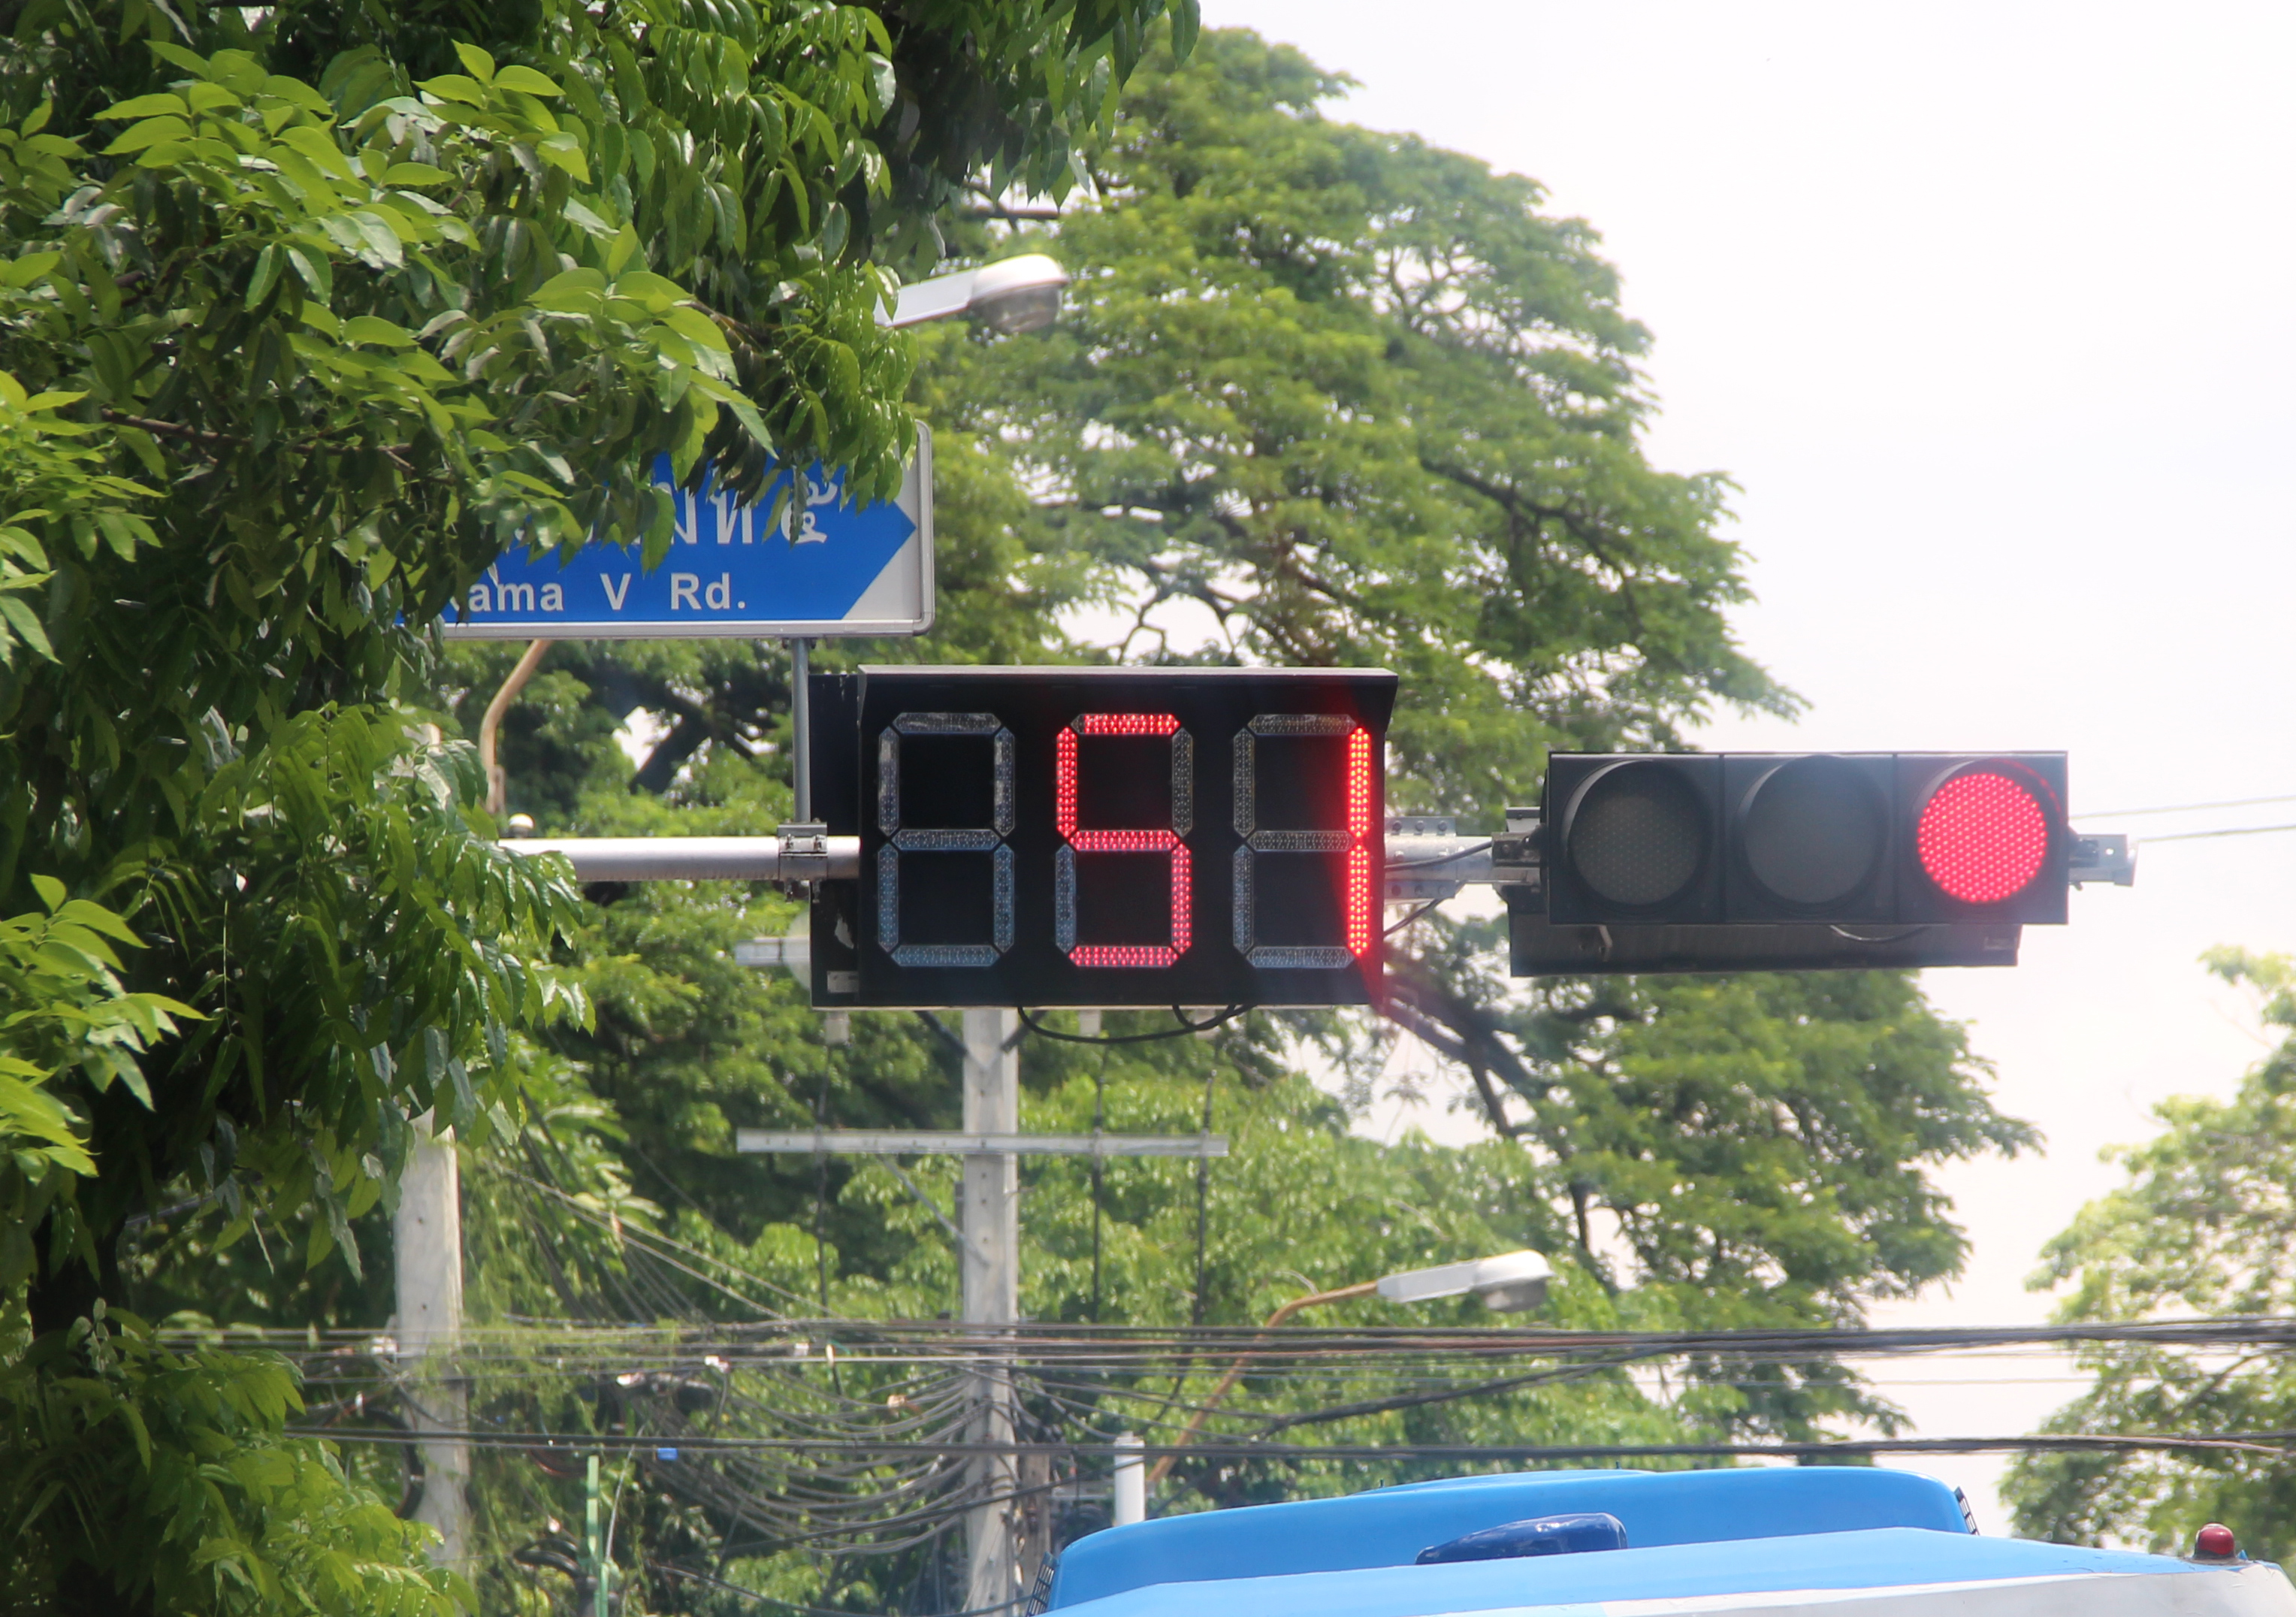 ガラパゴス化する日本 世界統一基準の信号機の点灯方法や道路標識はまったく違う Auto Messe Web カスタム アウトドア 福祉車両 モータースポーツなどのカーライフ情報が満載